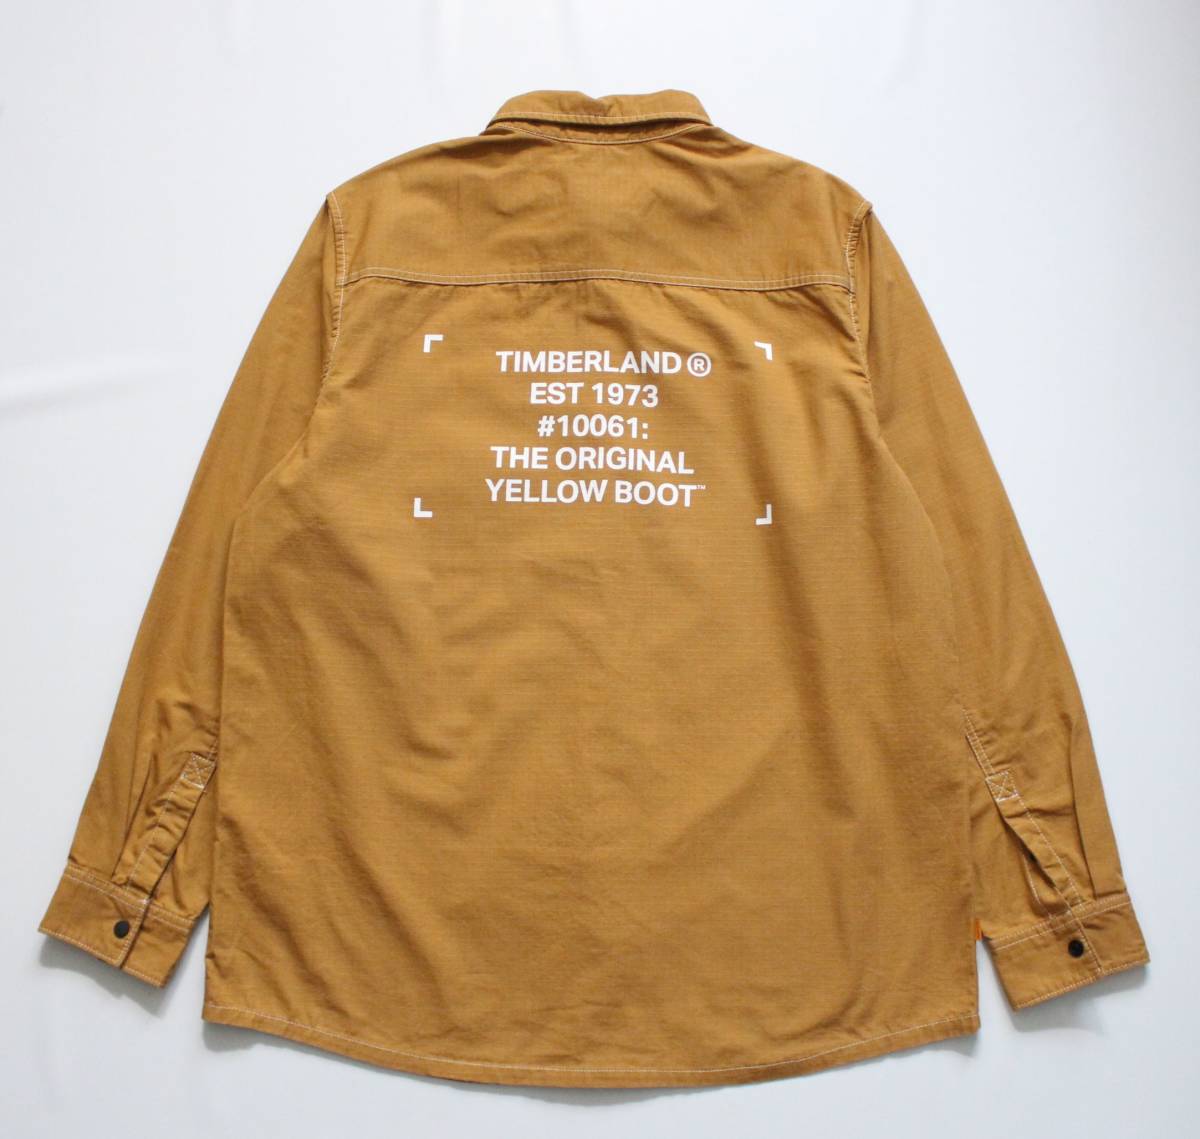  не использовался [ Timberland Timberland ] хлопок длинный рукав рубашка work shirt L/G TB0A2AC4 P47 обычная цена \\12,650 кнопка-застежка принт YELLOW BOOT